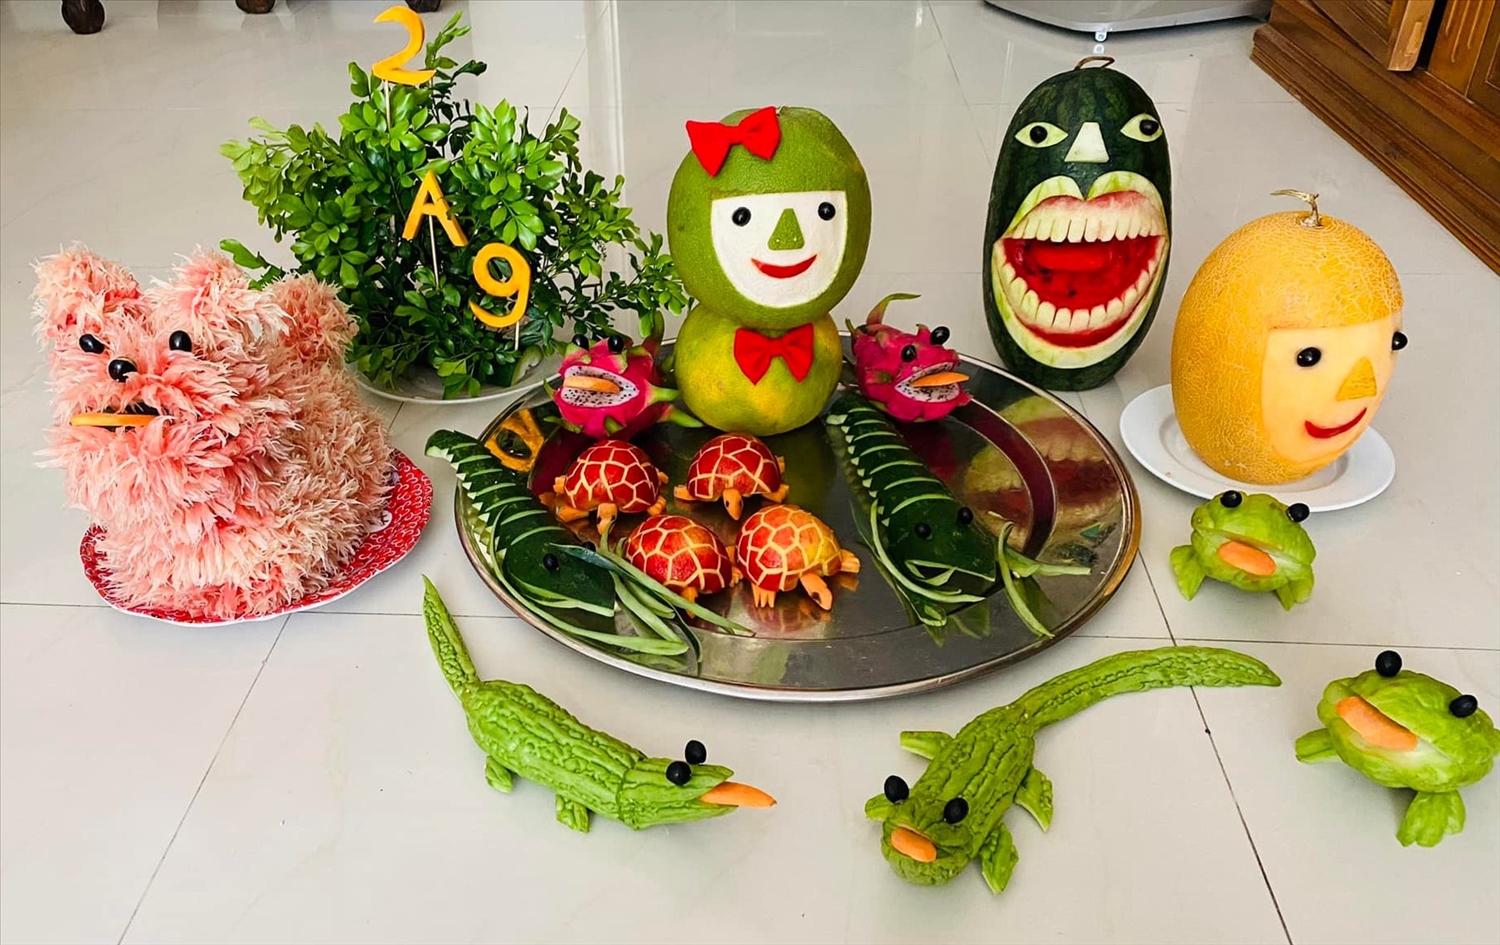 Trung thu - một lễ hội truyền thống đầy ý nghĩa được tổ chức vào ngày rằm tháng 8 âm lịch hằng năm tại Việt Nam. Hãy xem những hình ảnh liên quan đến lễ hội này để khám phá thêm về các hoạt động và nét đẹp truyền thống trong ngày Tết đoàn viên này.